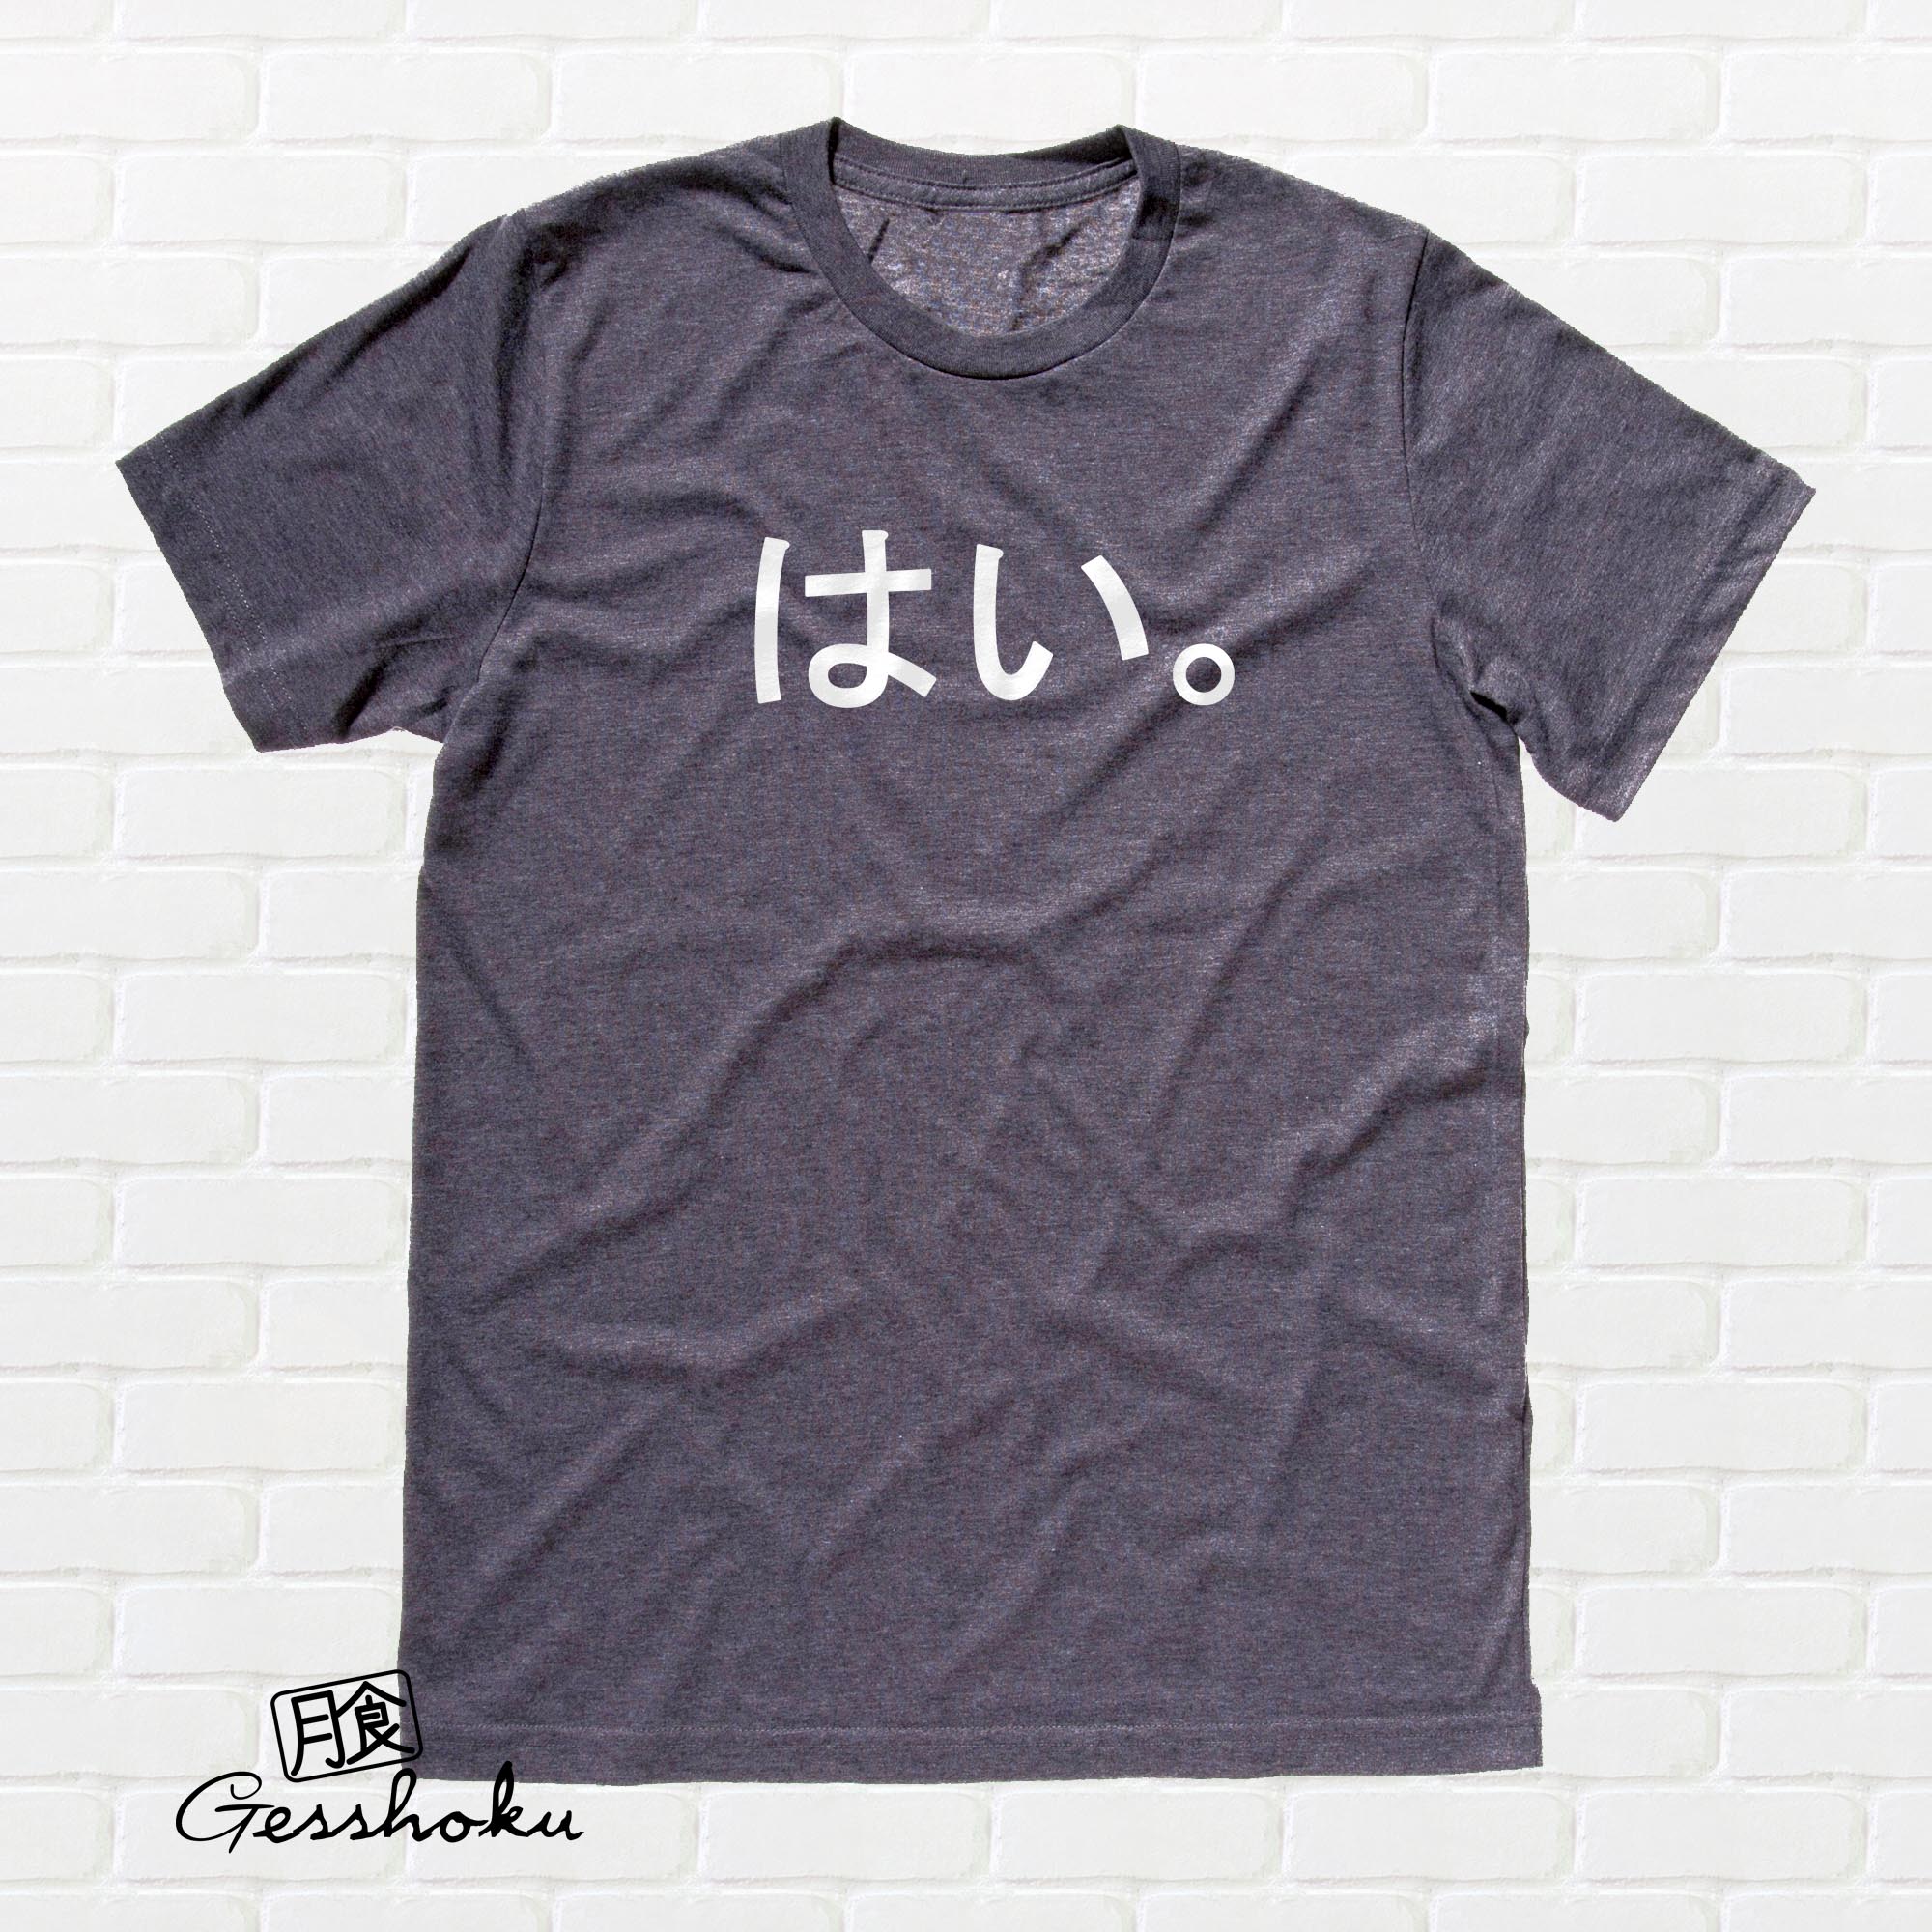 Hai. Japanese T-shirt - Charcoal Grey